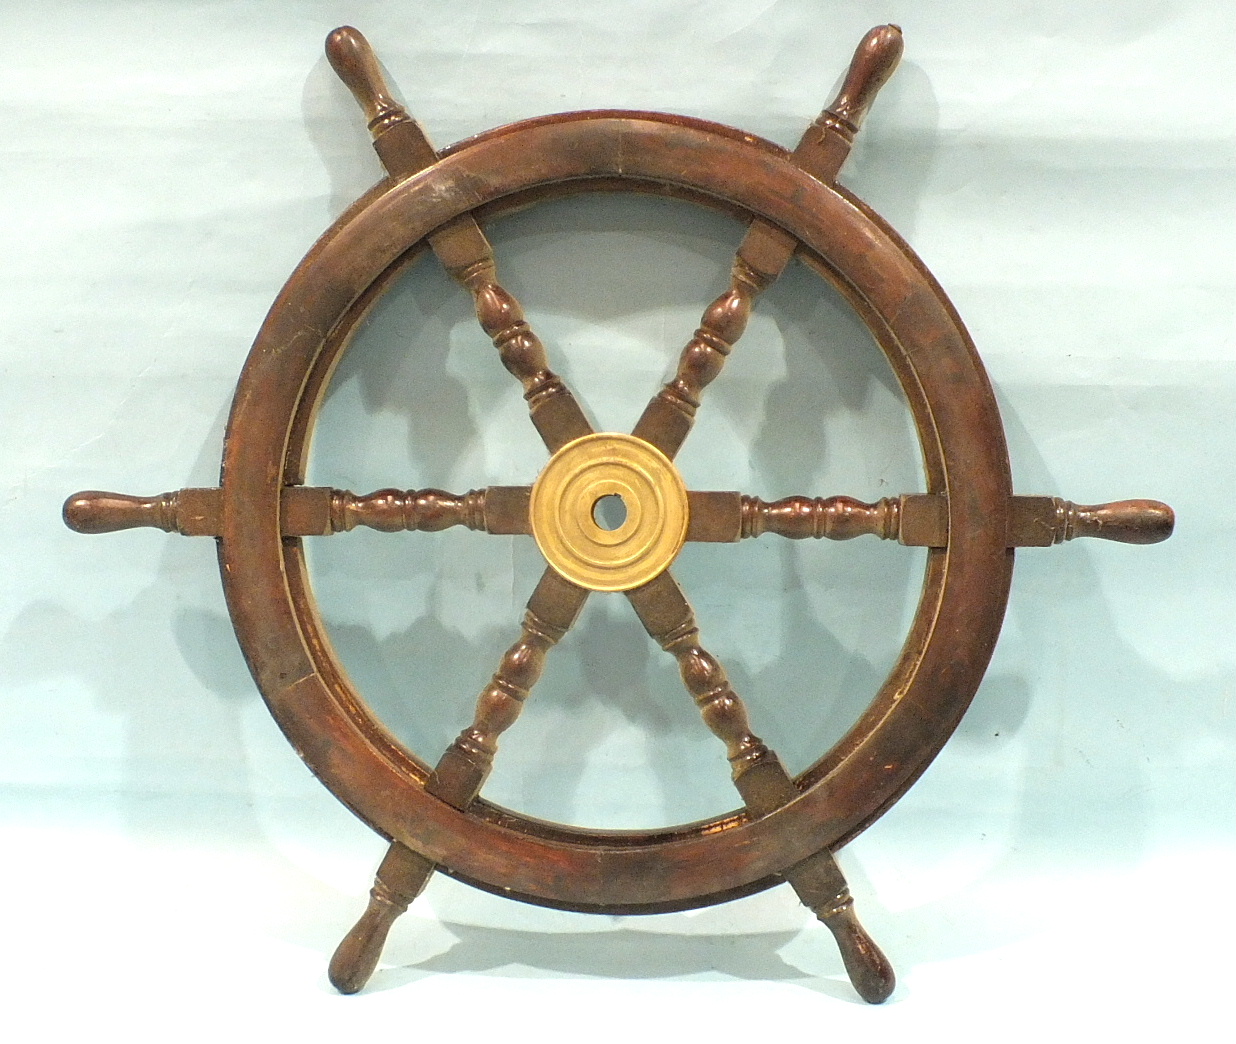 A six-spoke ship's wheel, 76cm diameter.